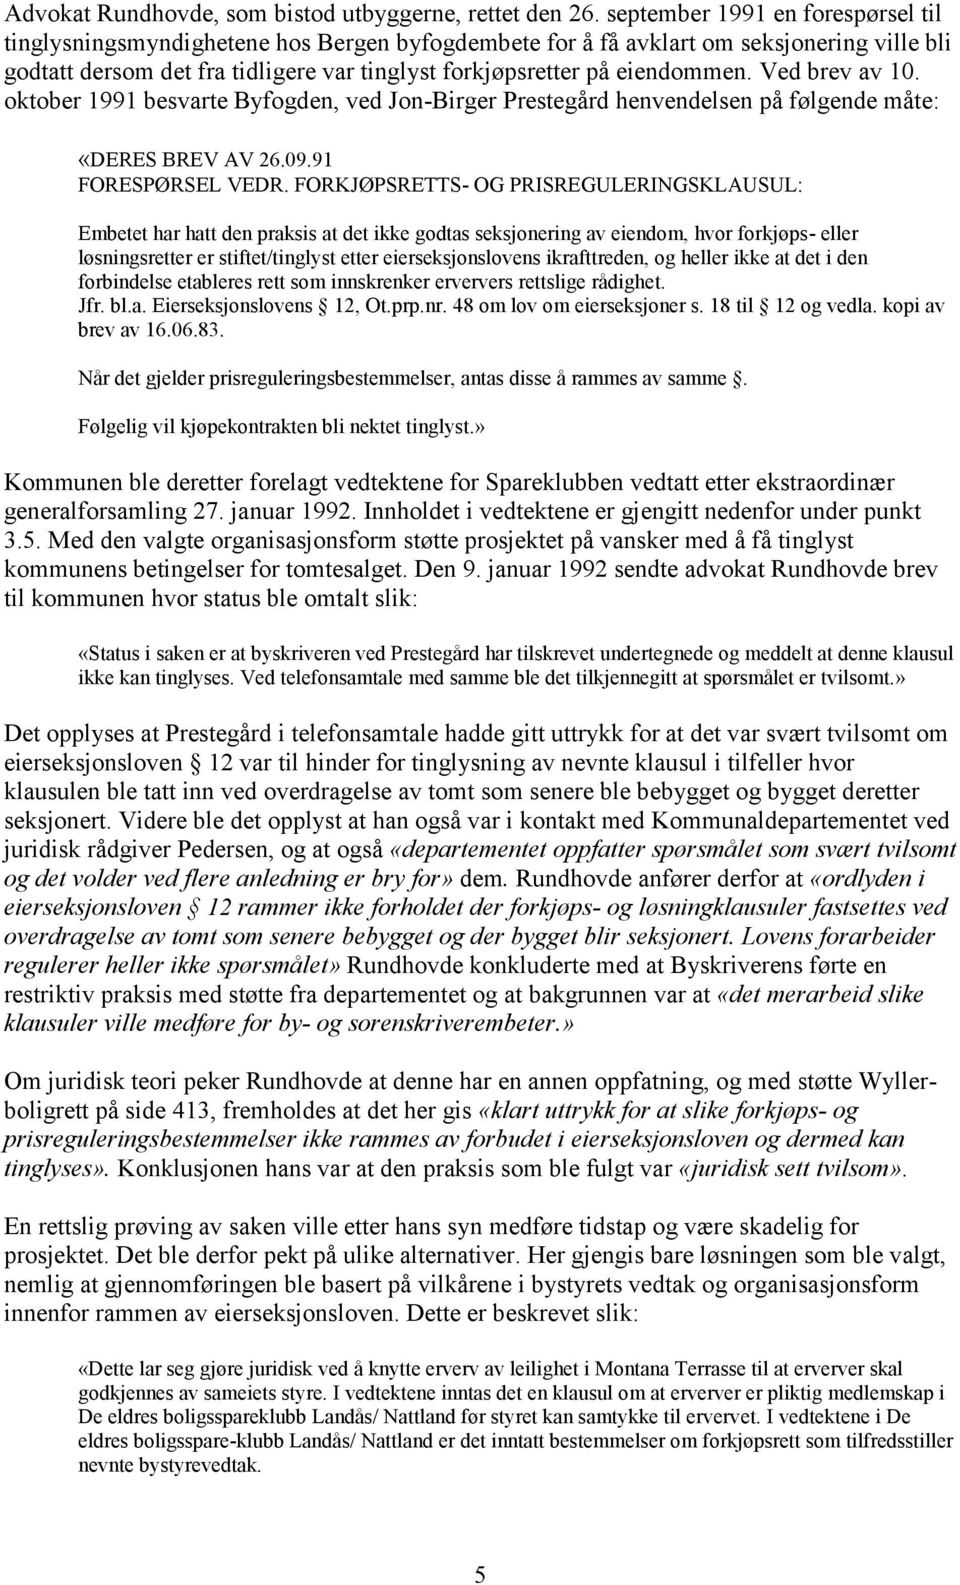 eiendommen. Ved brev av 10. oktober 1991 besvarte Byfogden, ved Jon-Birger Prestegård henvendelsen på følgende måte: «DERES BREV AV 26.09.91 FORESPØRSEL VEDR.